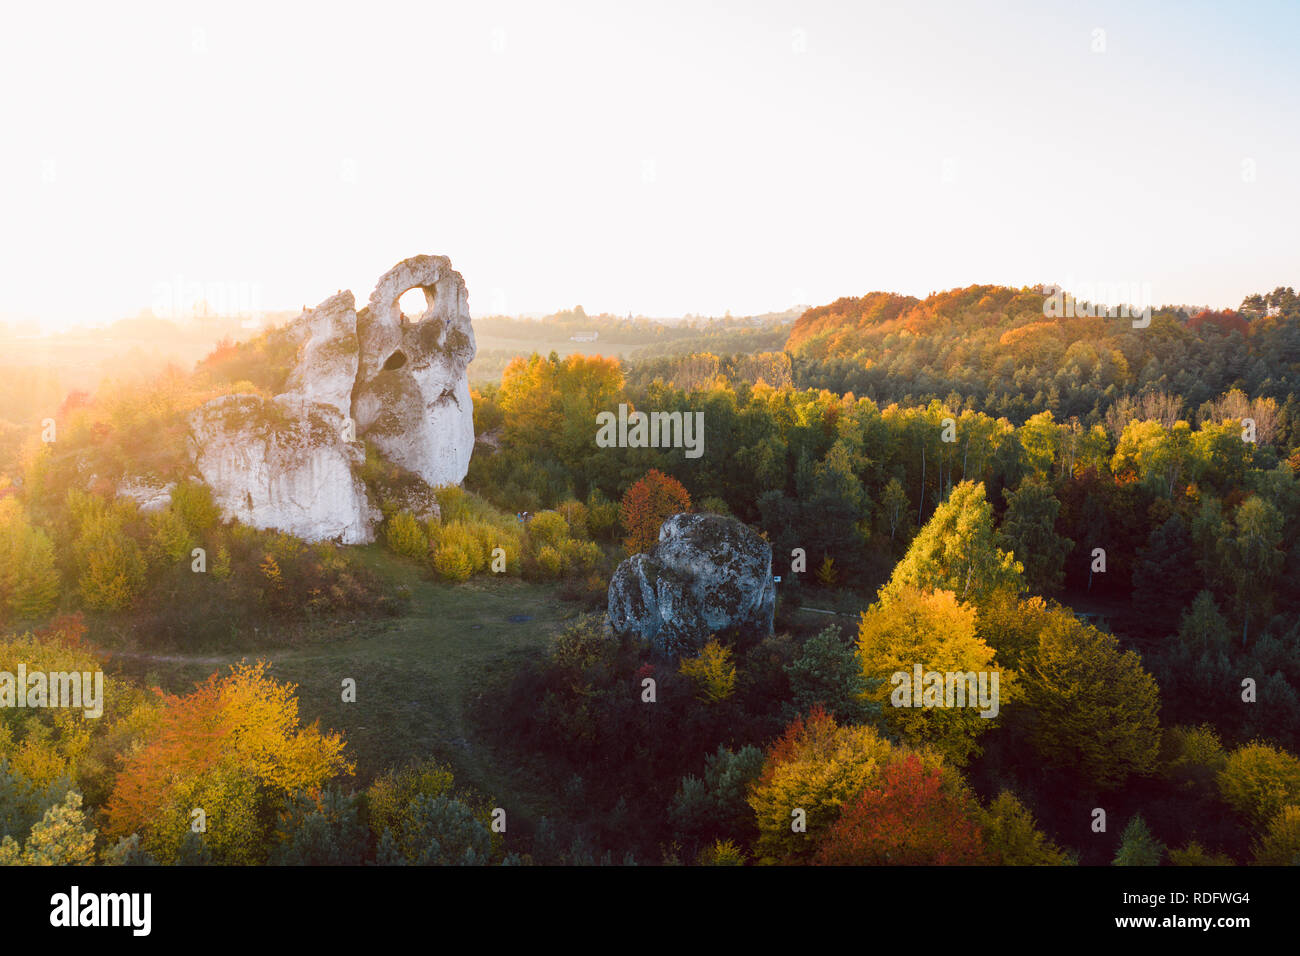 Einen Panoramablick auf die einzigartige Okiennik Rock in Polen mit einem großen natürlichen Fenster Stockfoto